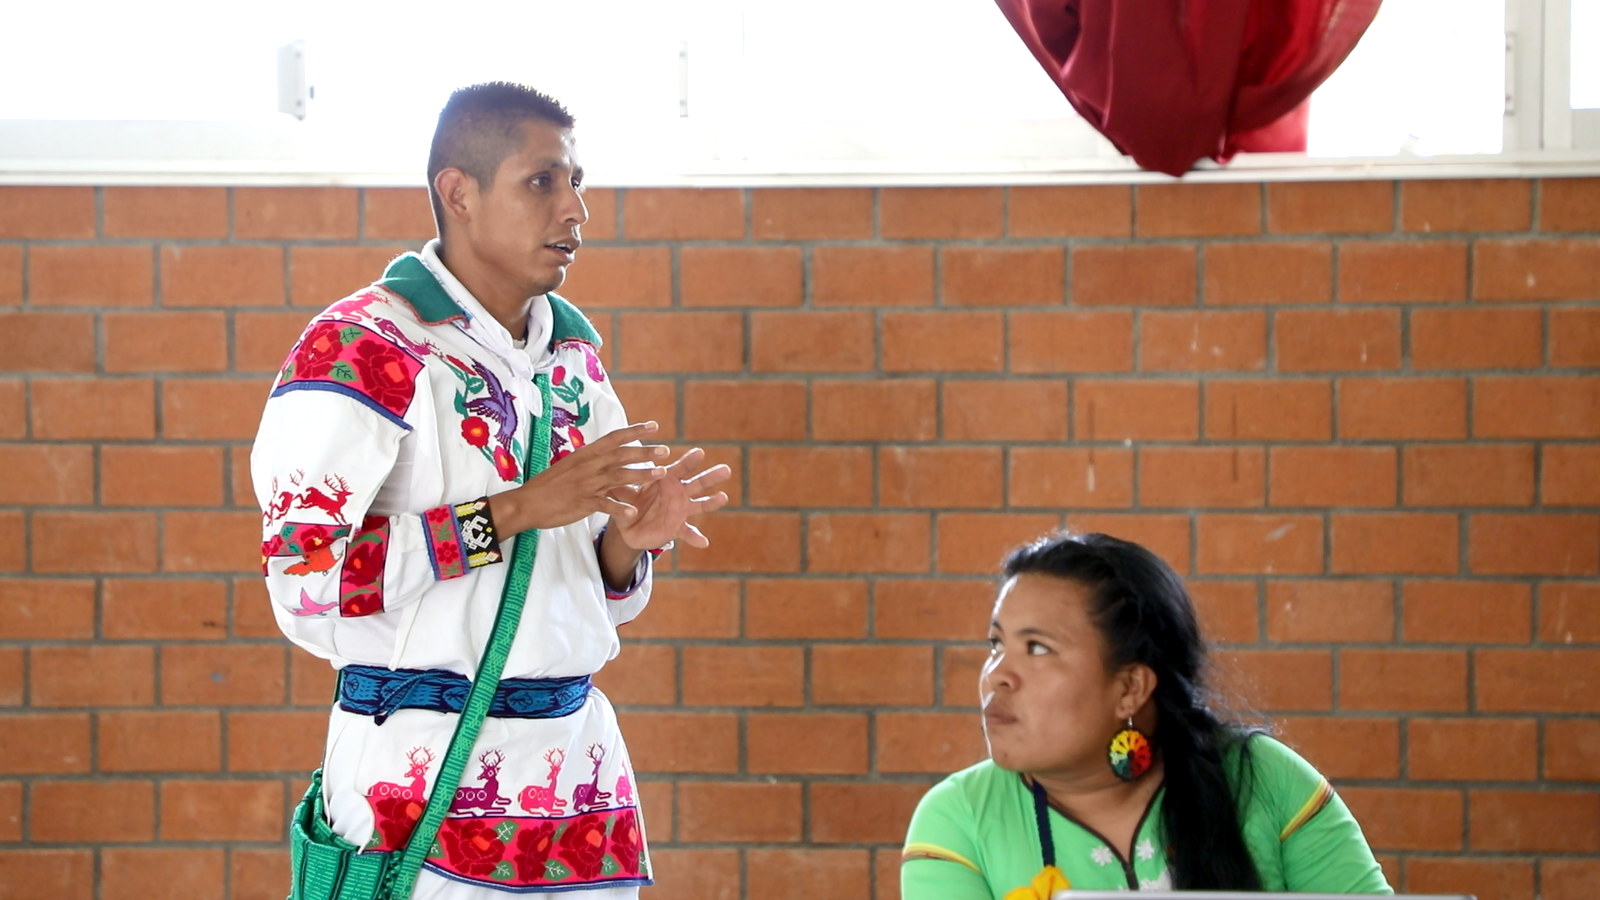 El plantel trabaja en el diseño de un nuevo programa educativo que busca reforzar la vinculación entre la docencia y los pueblos originarios